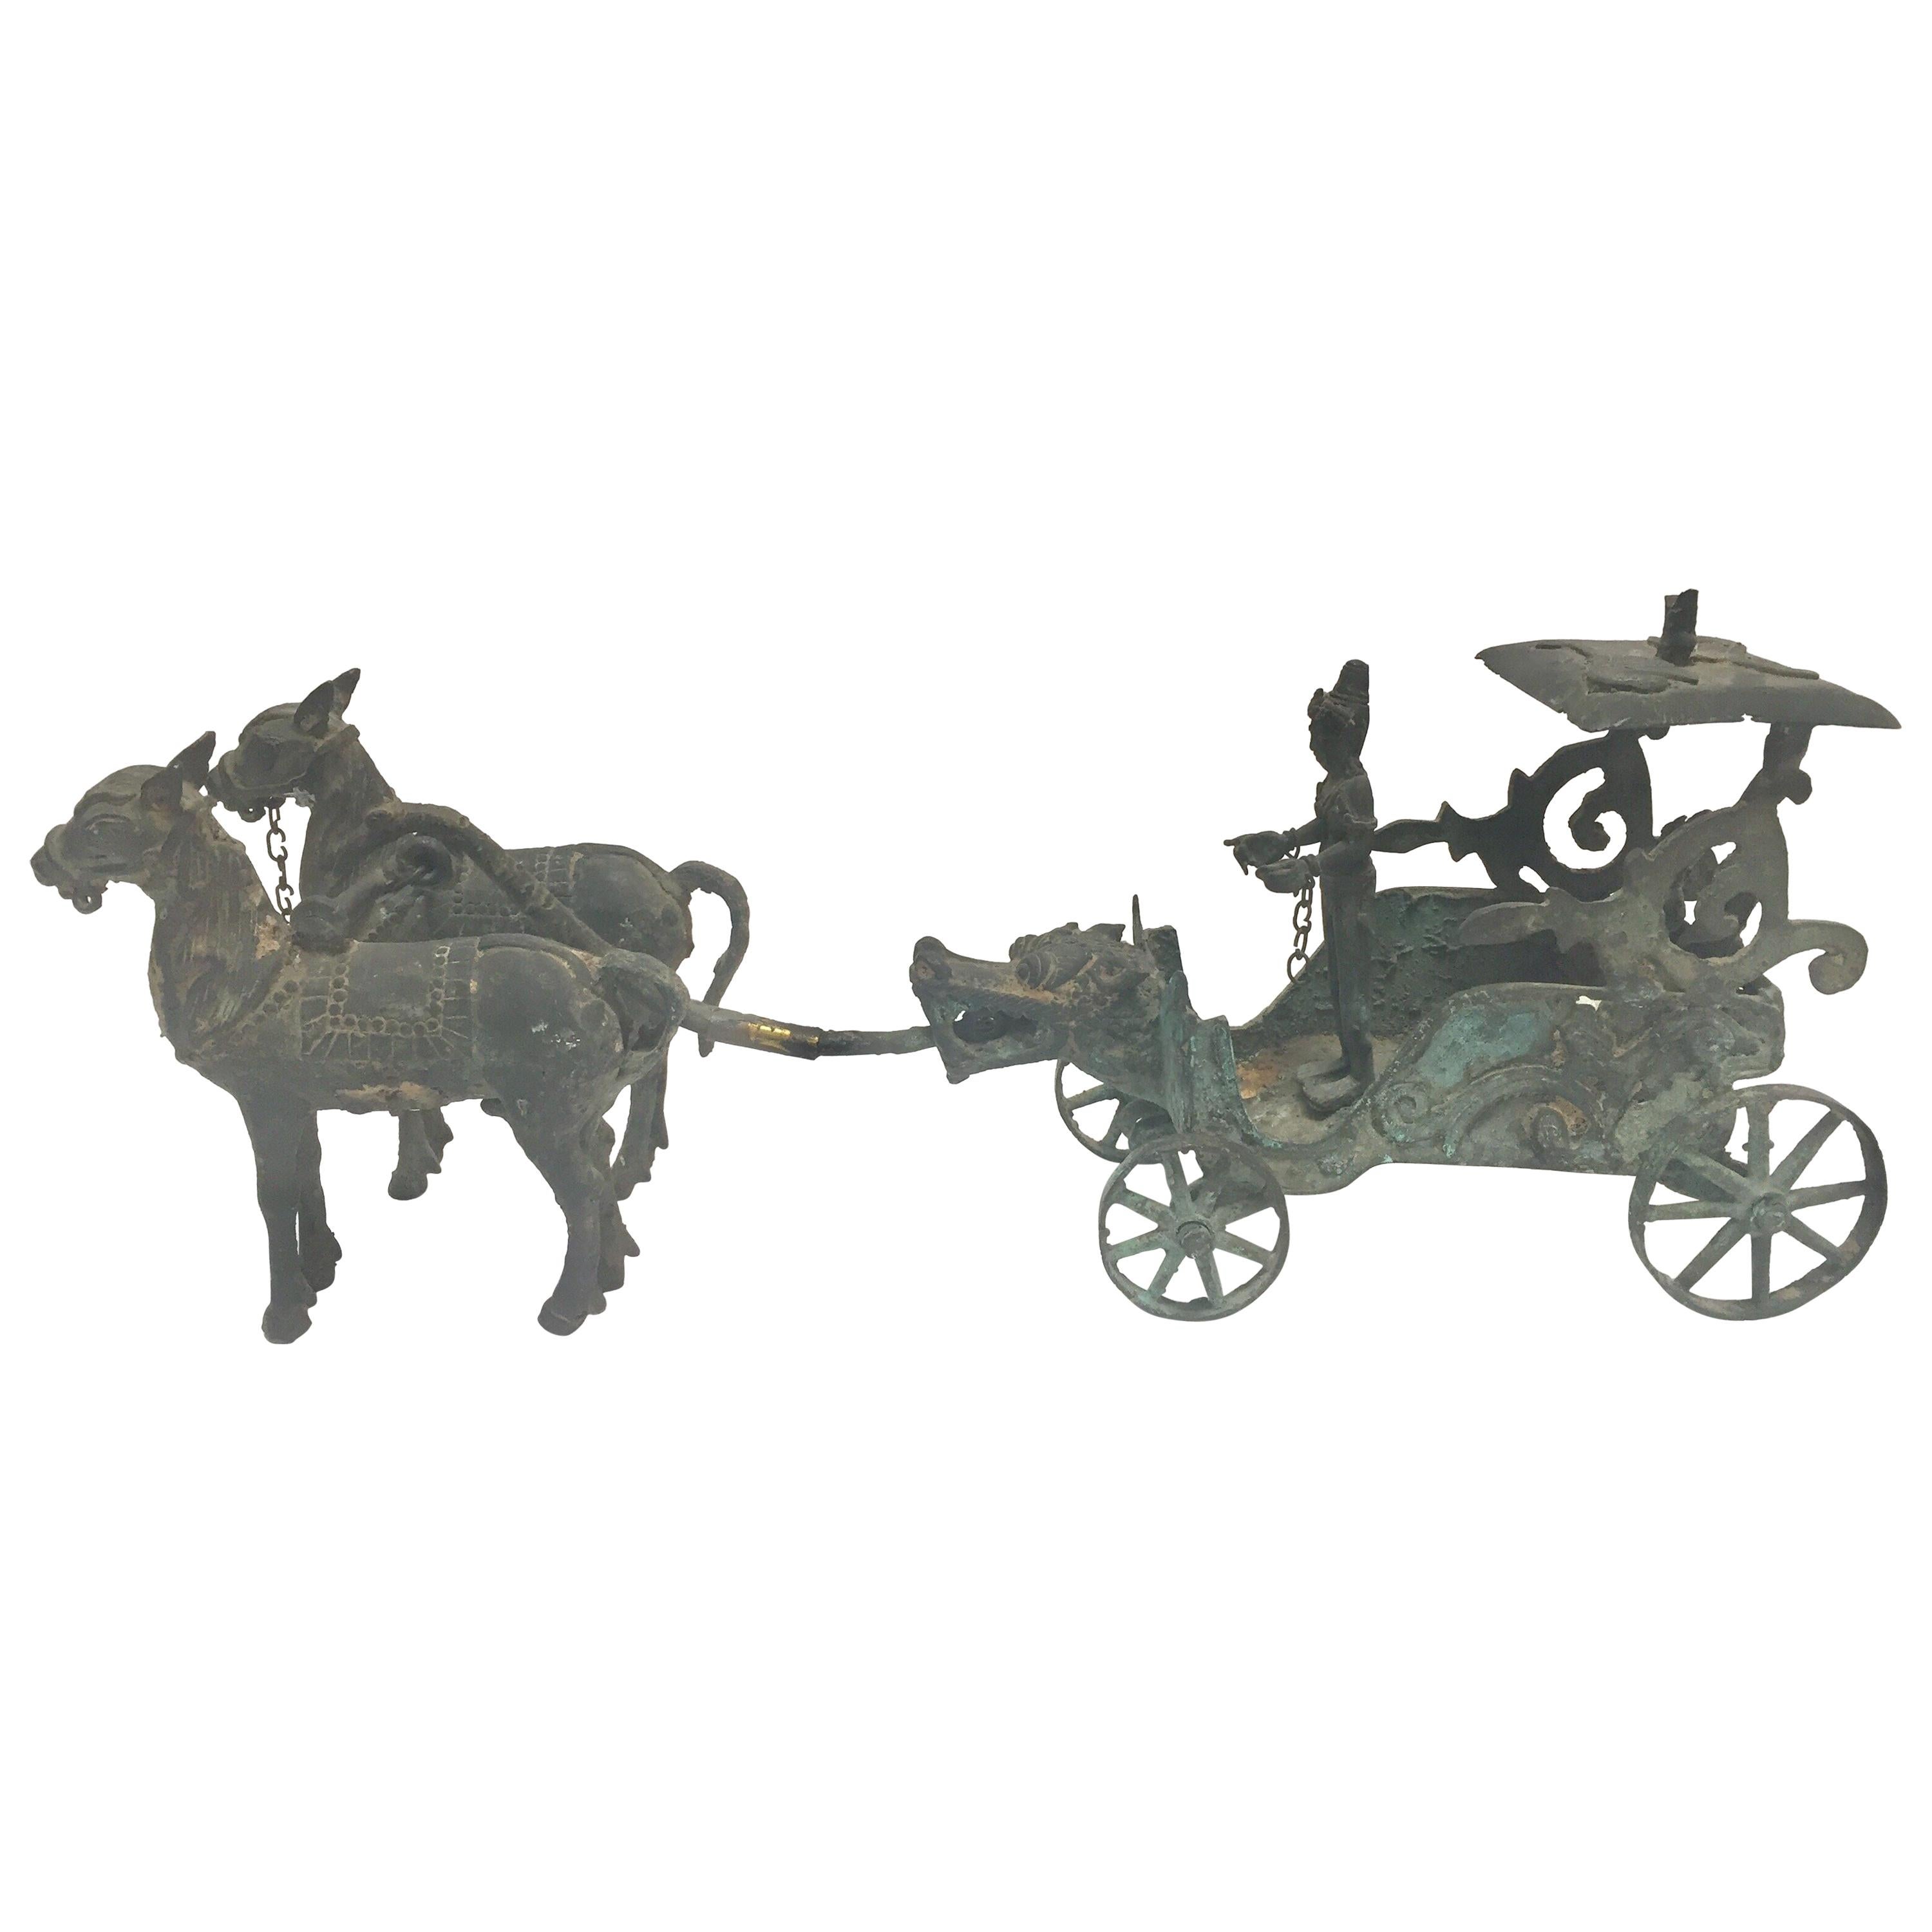 Chariot asiatique ancien en bronze avec tête de dragon tirée par des chevaux